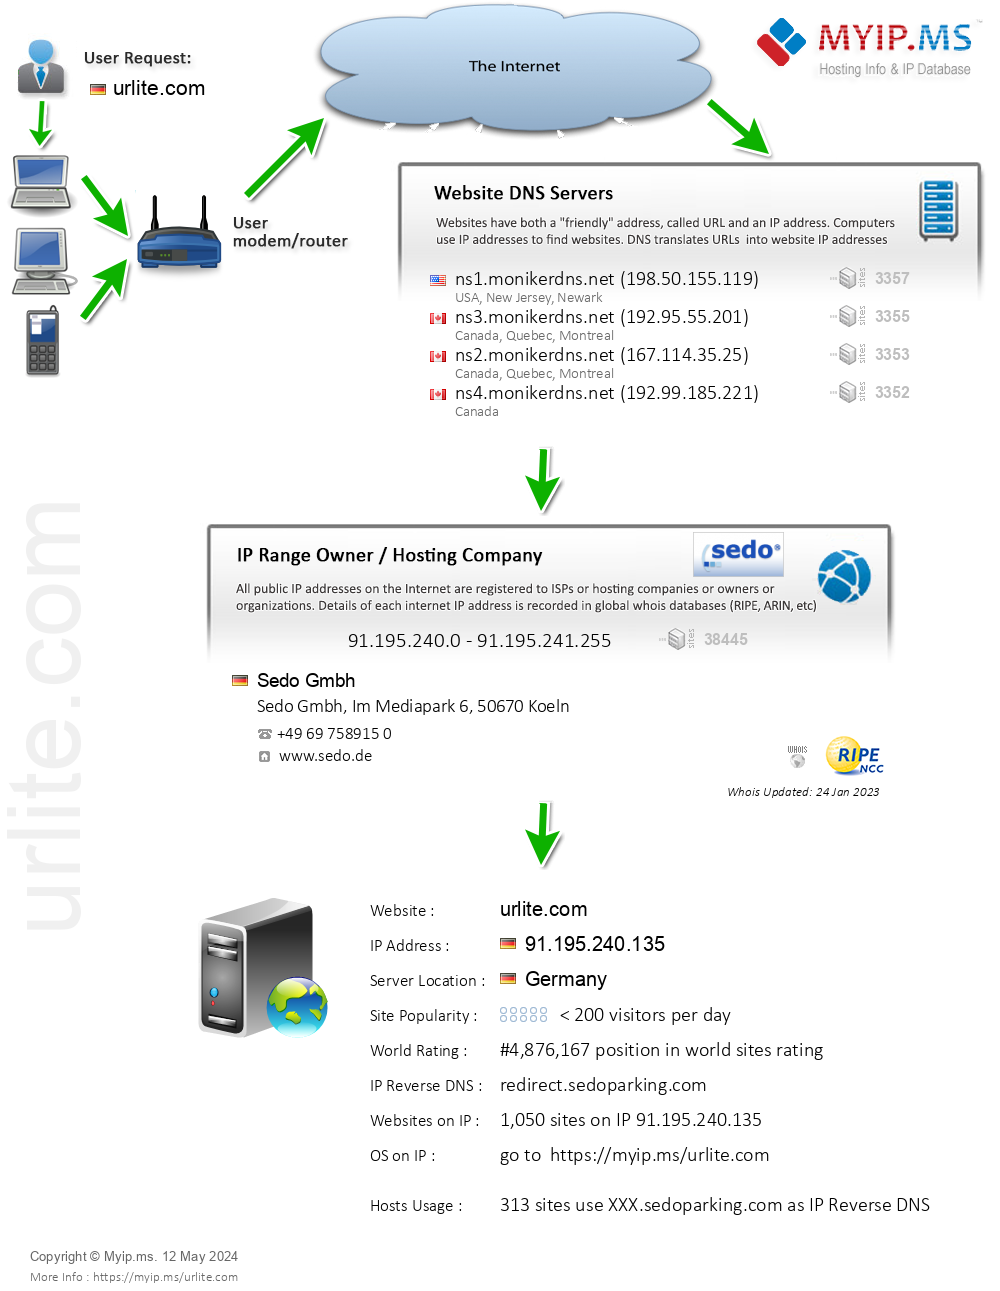 Urlite.com - Website Hosting Visual IP Diagram